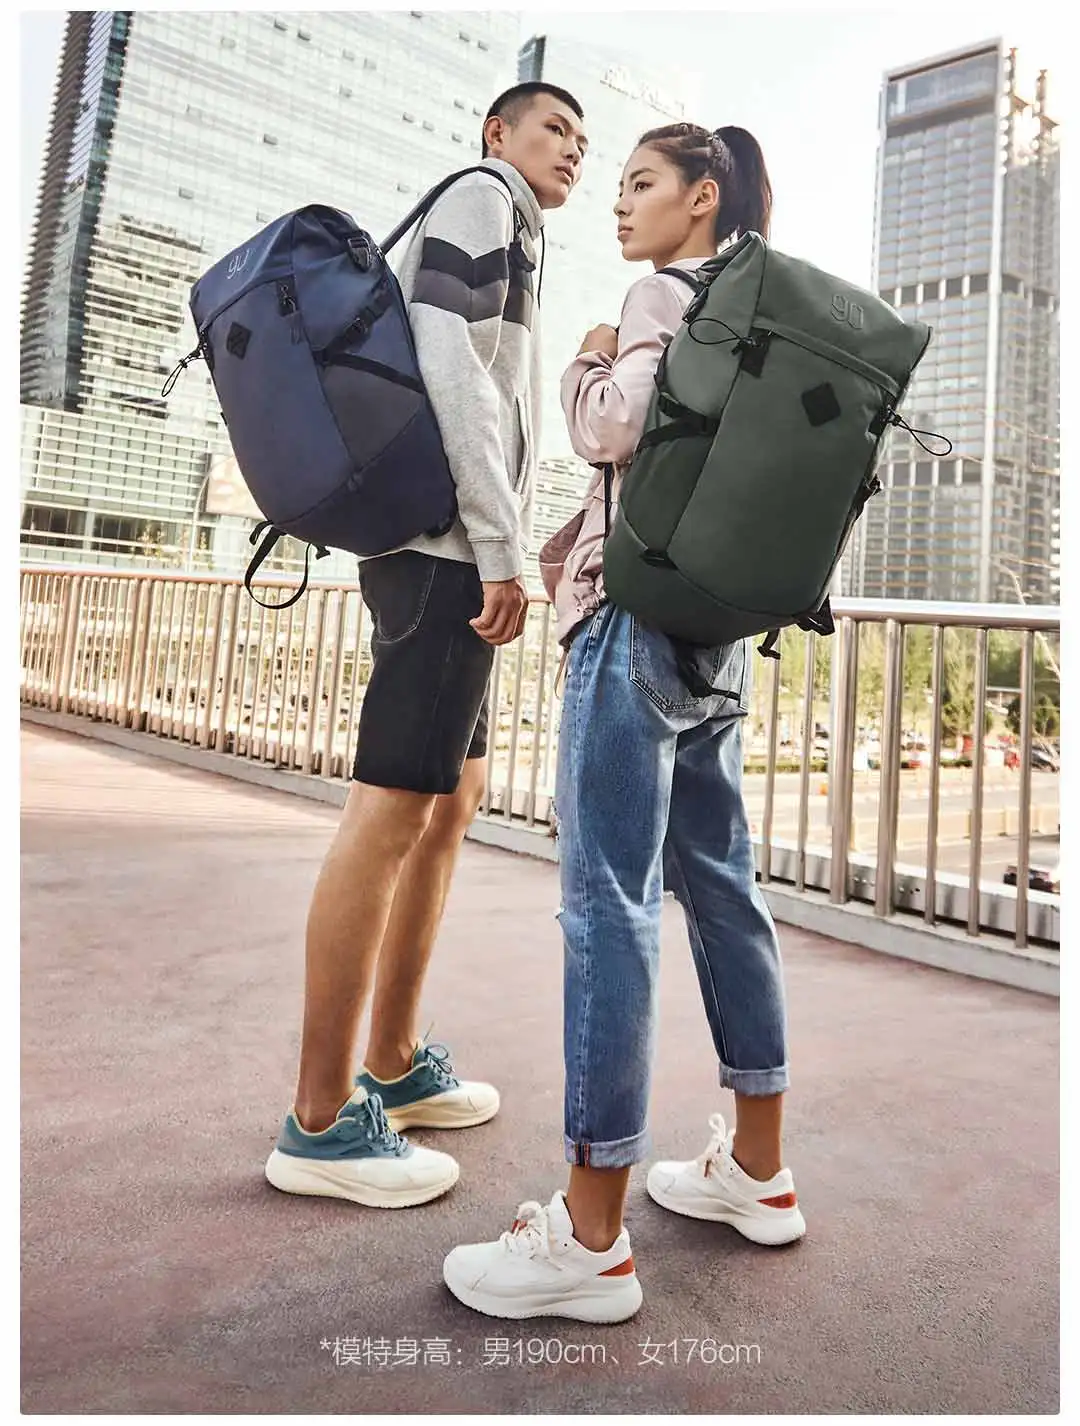 90Fun 25L большой емкости для походов на открытом воздухе рюкзак для мужчин и женщин Multifuntion водонепроницаемый подростковый рюкзак для путешествий Mochilas